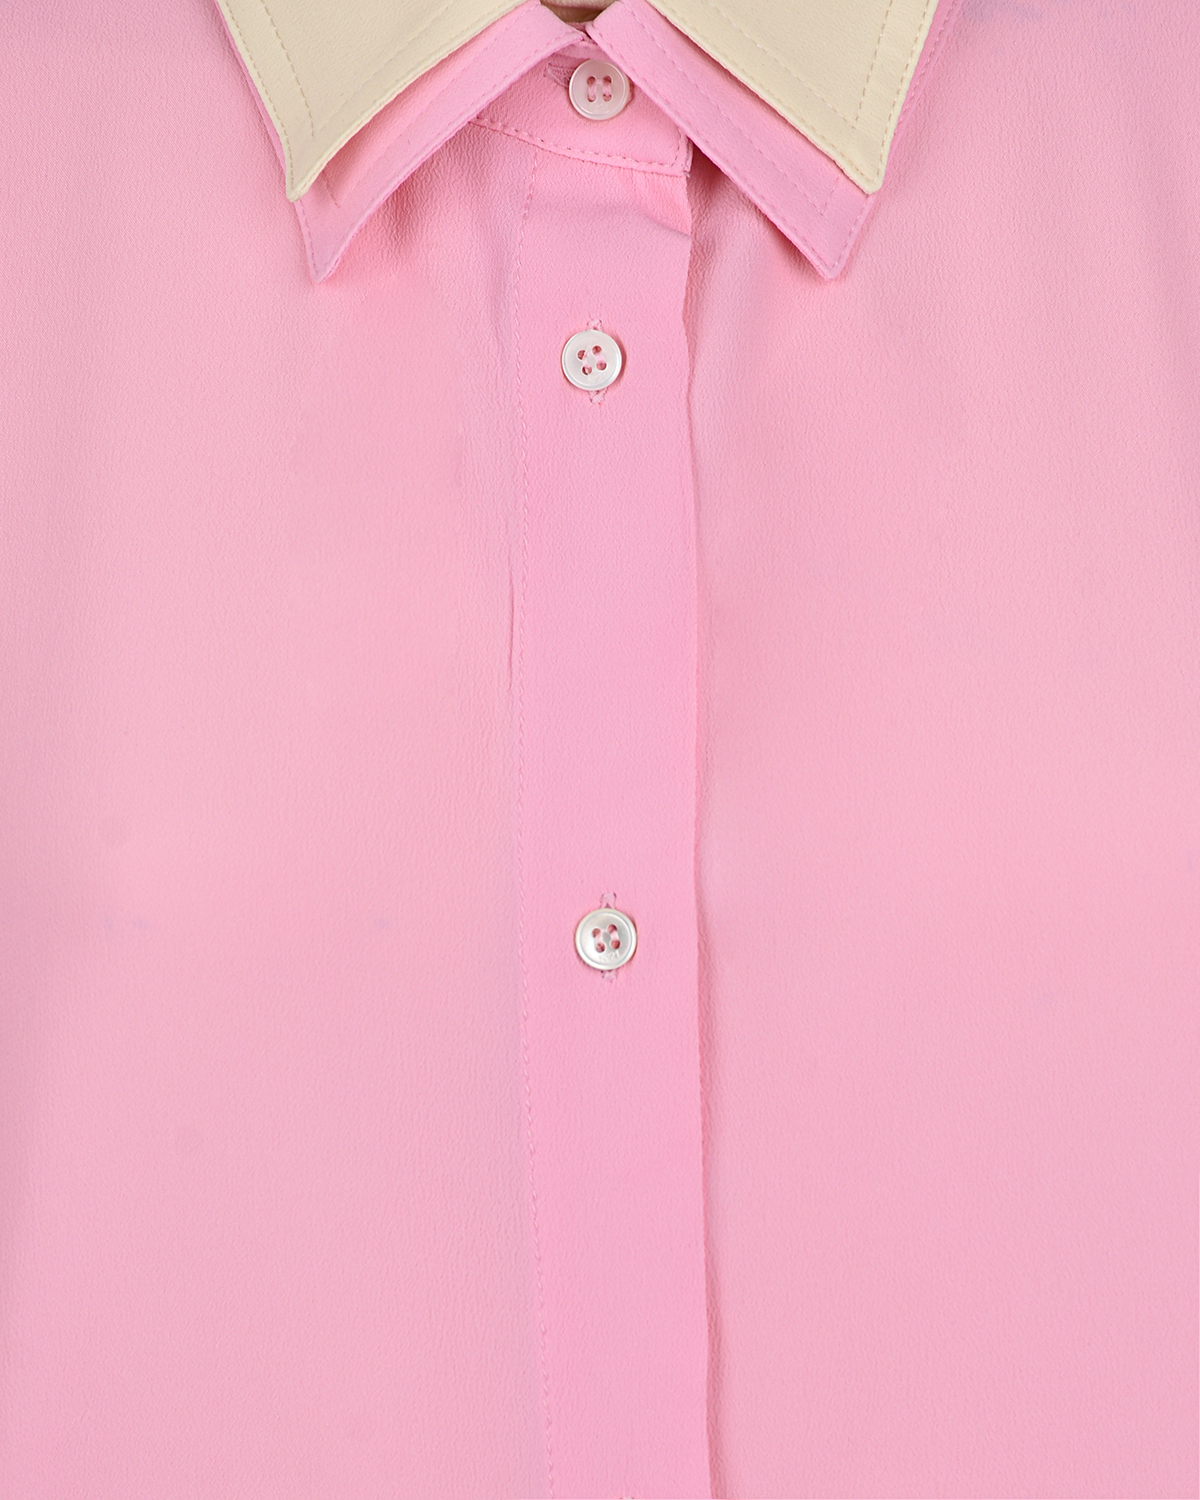 Двойная рубашка No. 21, размер 38, цвет розовый - фото 7